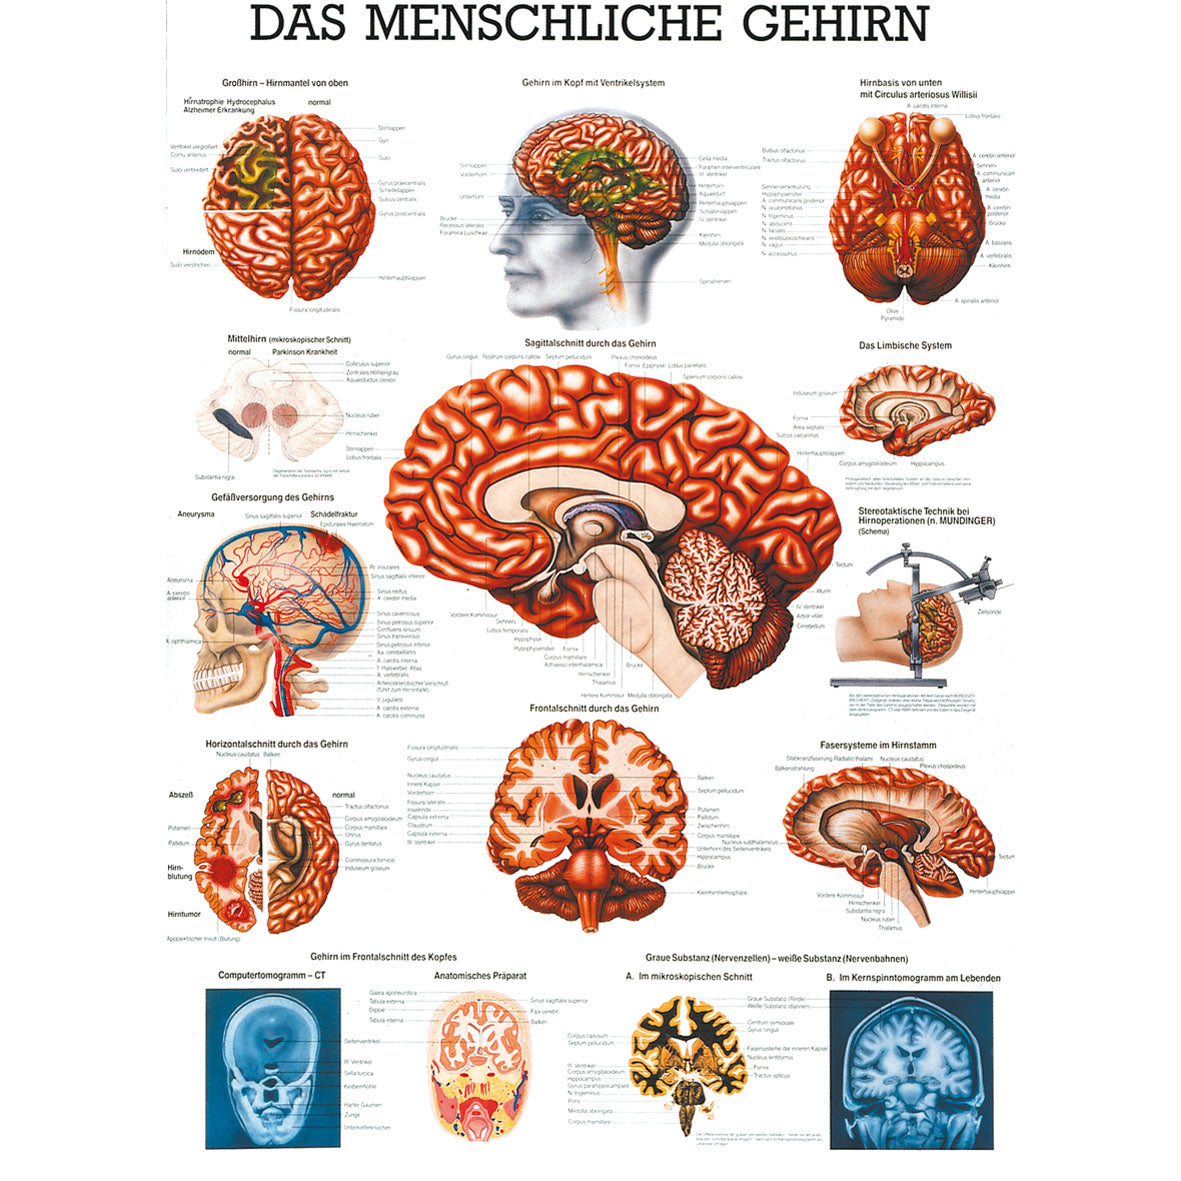 Anatomisches Poster "Das menschliche Gehirn"